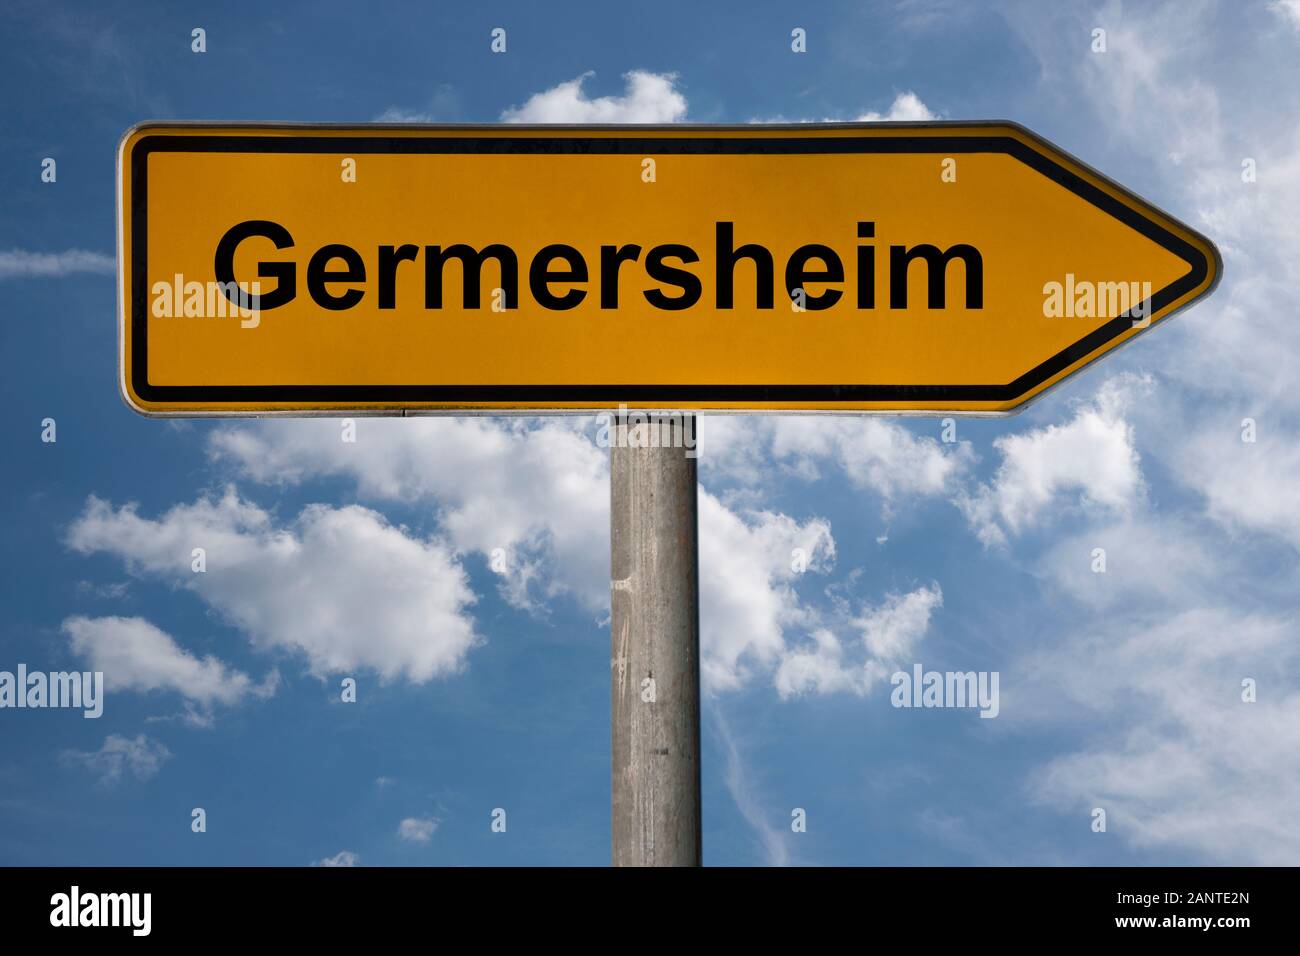 Photo détail d'un panneau avec l'inscription Germersheim, Rhénanie-Palatinat, Allemagne, Europe Banque D'Images